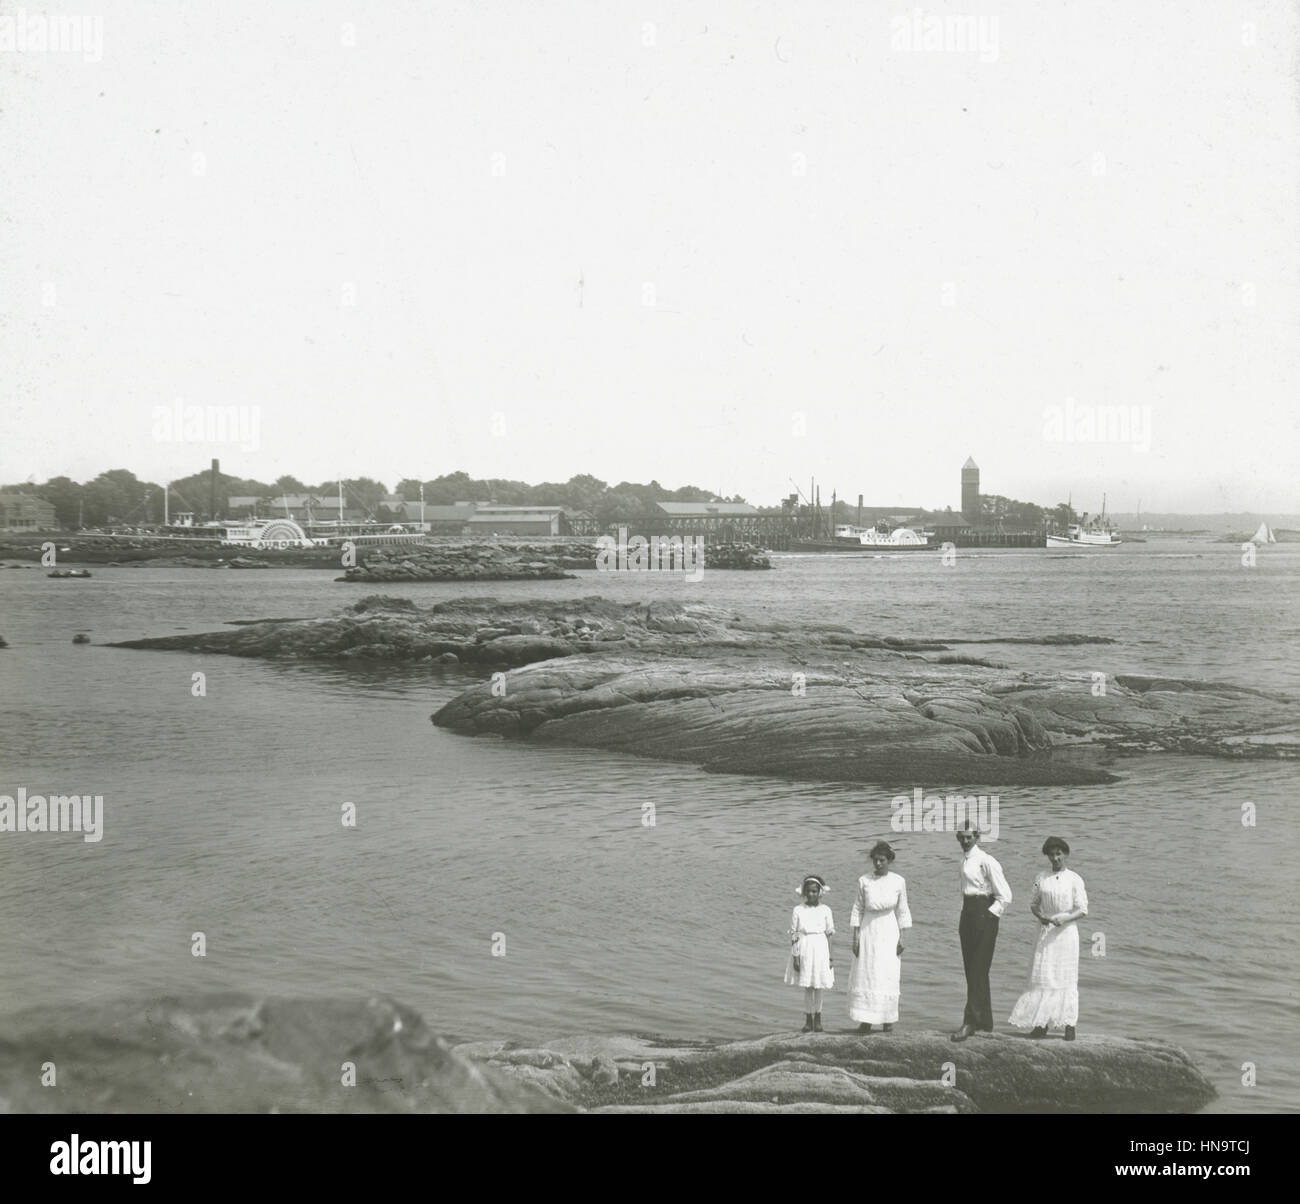 C Antique1900 photographie, en face de petite ville de côte, à aubes Aurora visible dans dock. Lieu inconnu, peut-être New York, USA. Banque D'Images